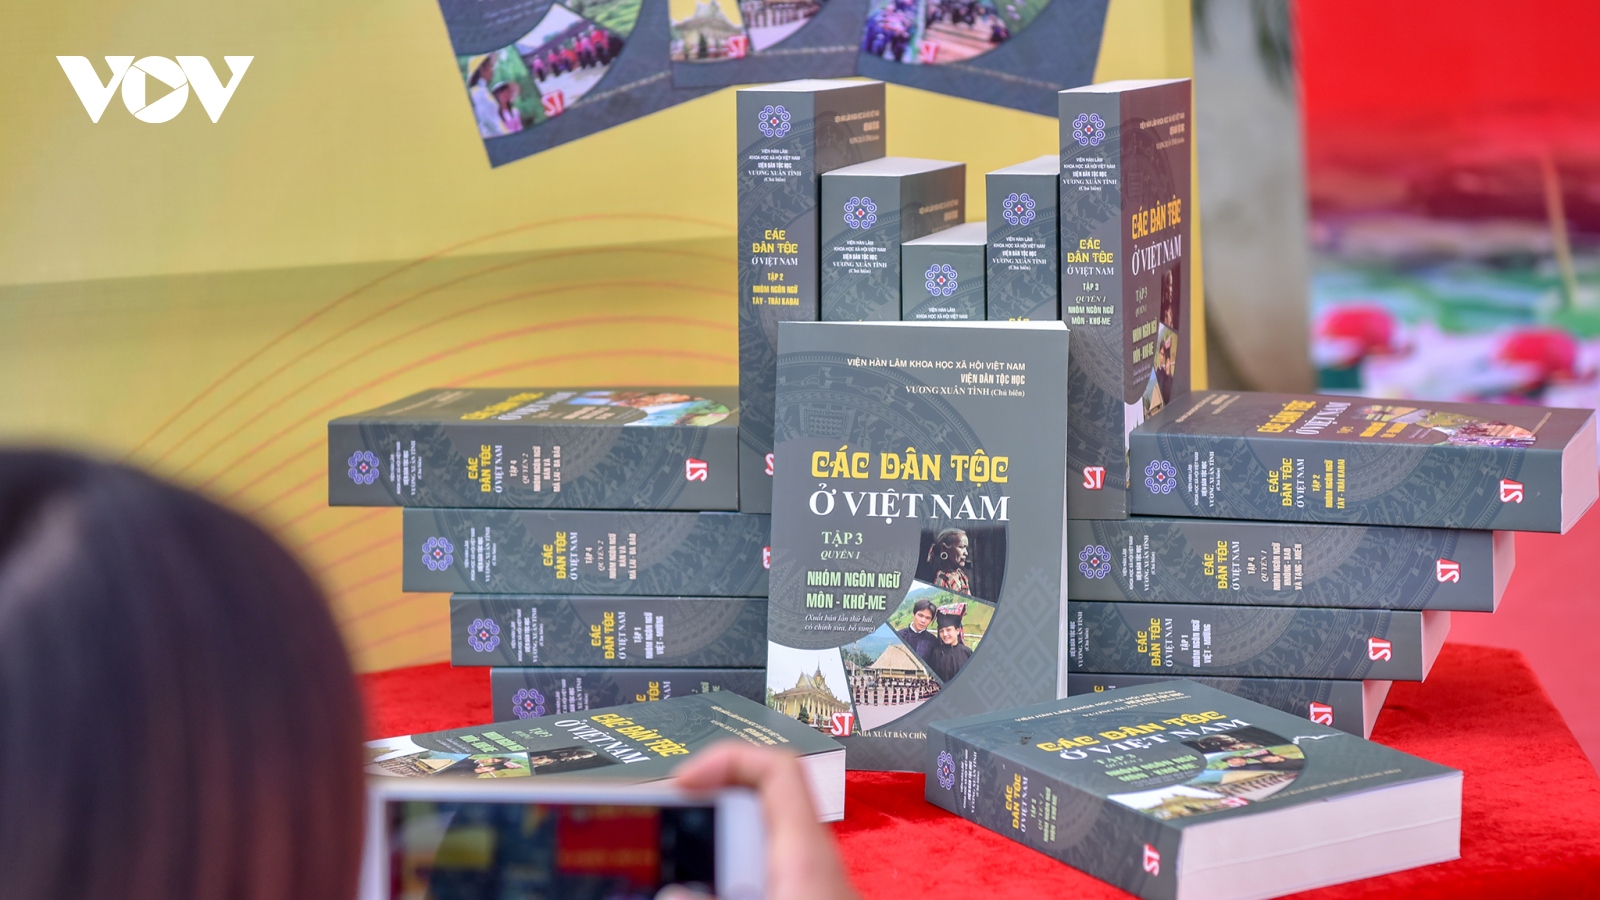 Ra mắt bộ sách quý về các dân tộc ở Việt Nam